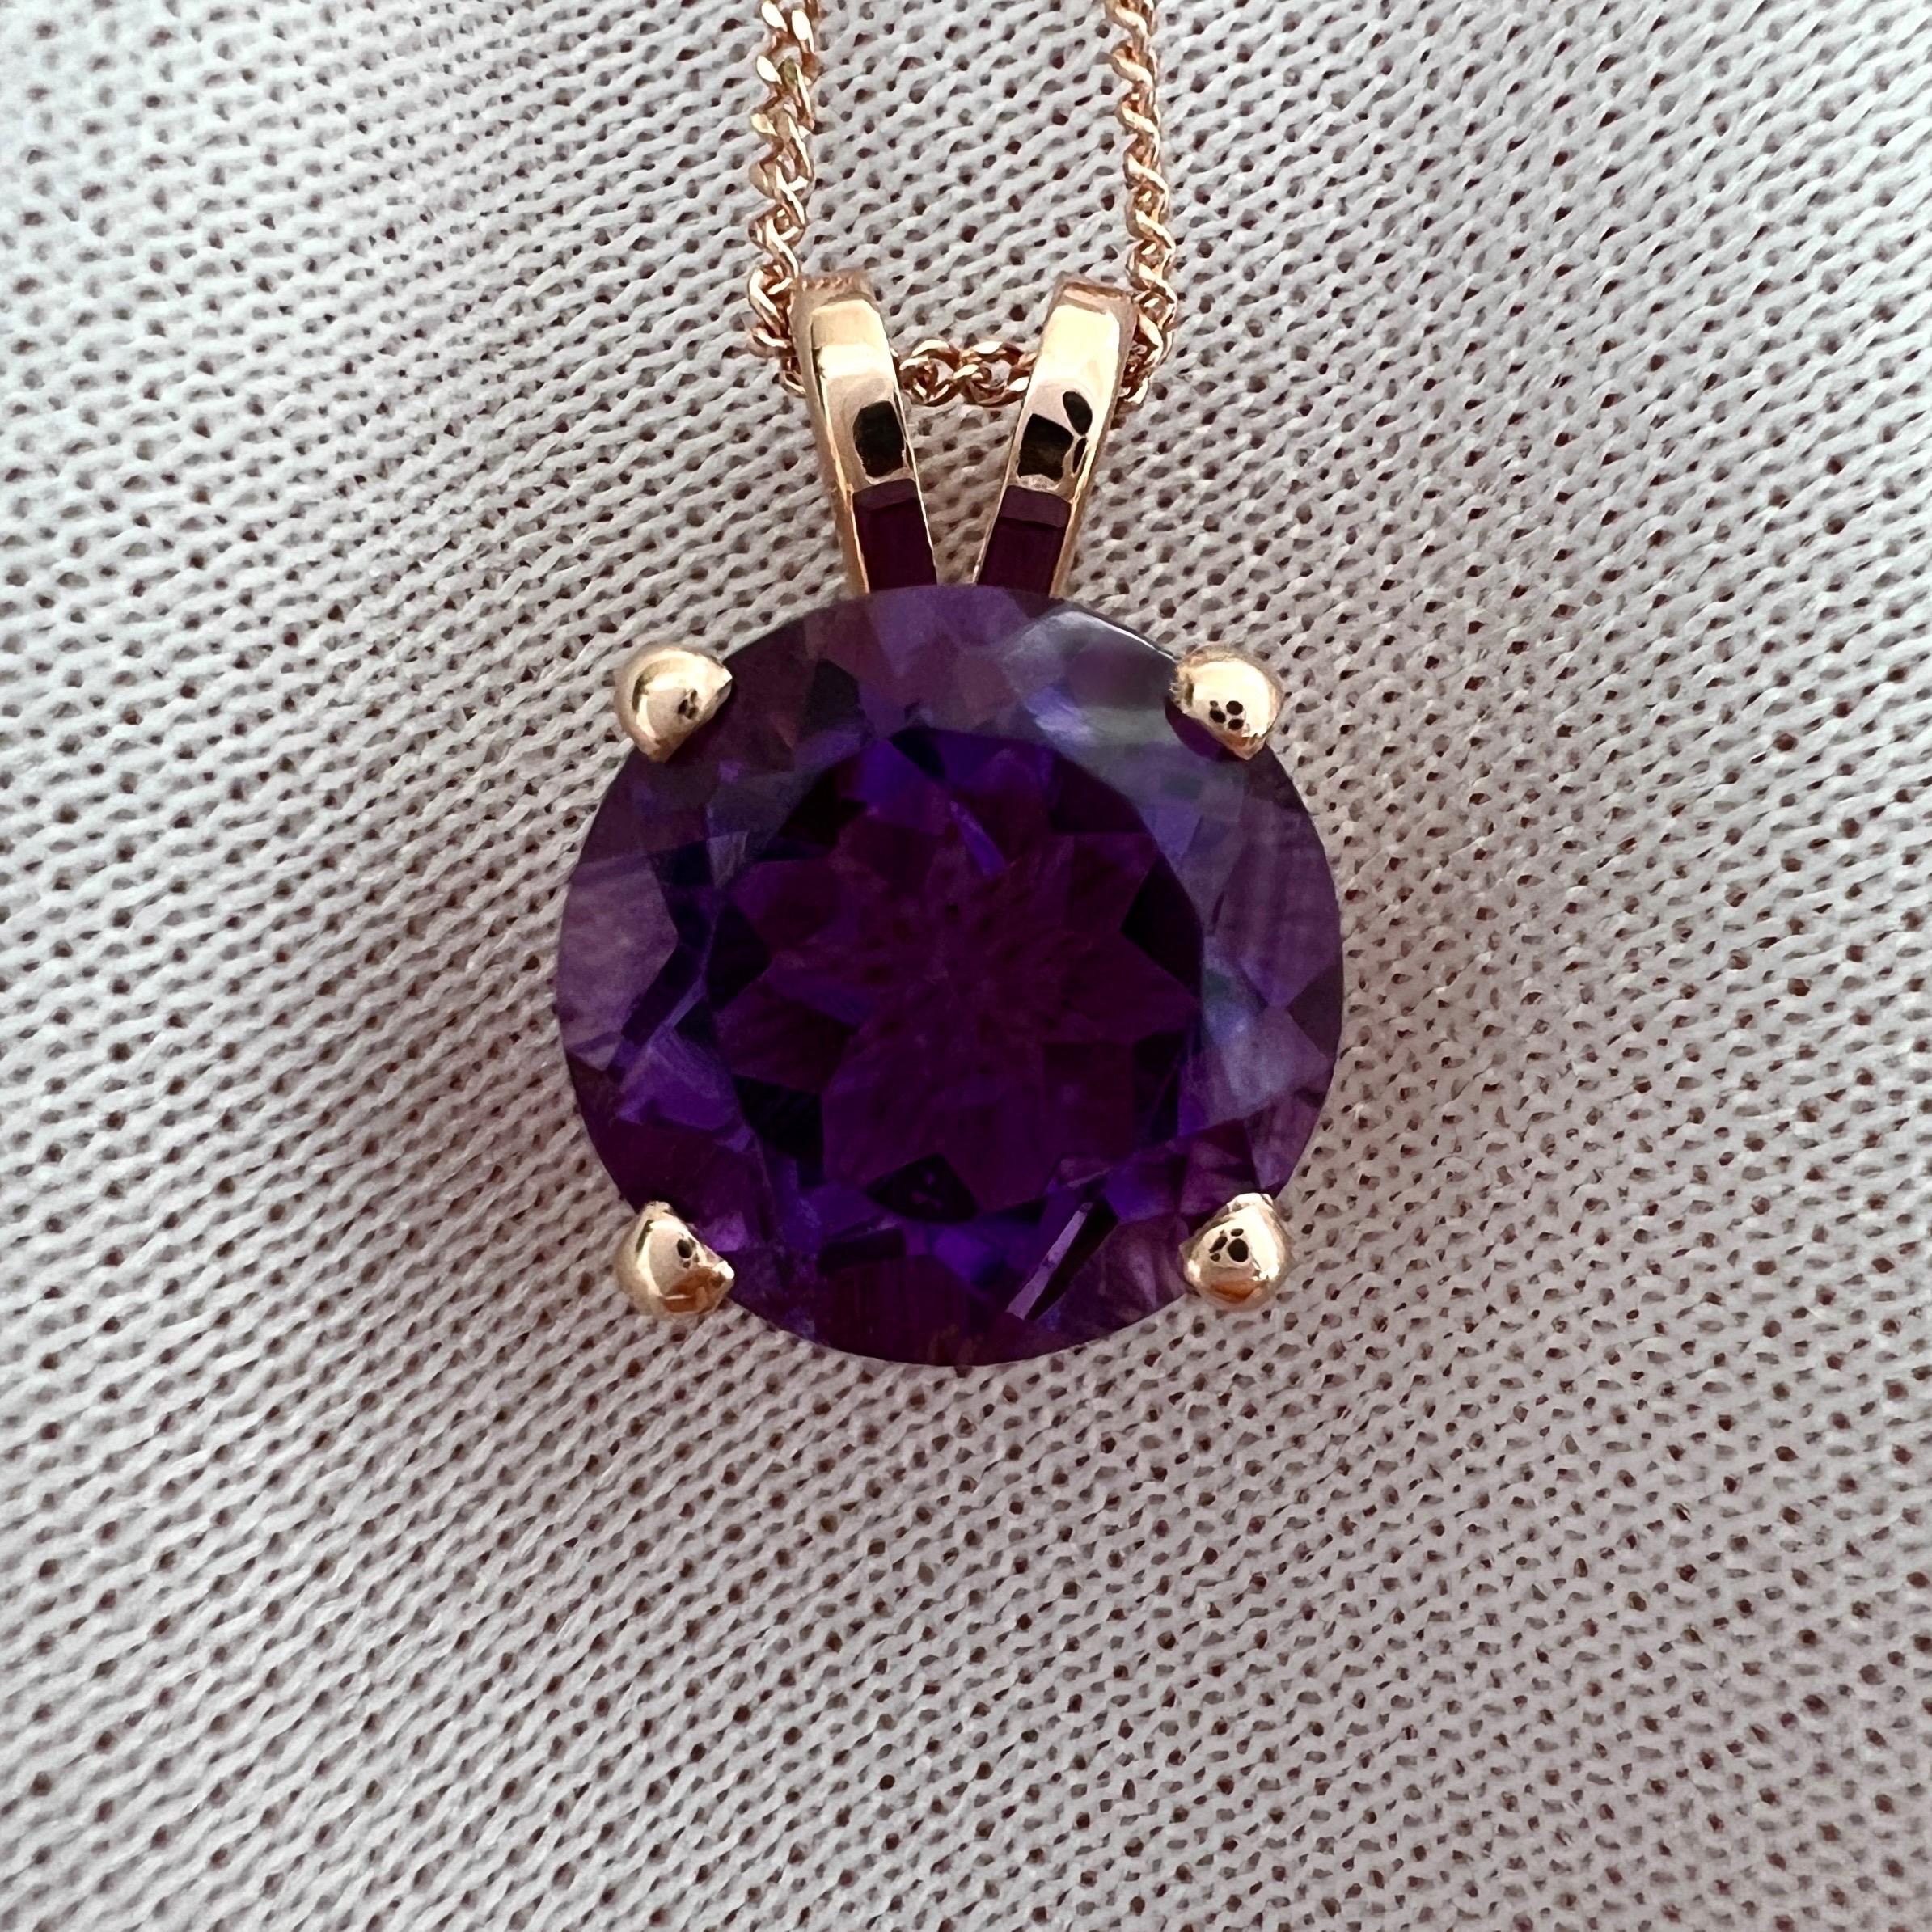 Natürlicher runder Brillantschliff tief lila Amethyst 14k Rose Gold Anhänger Halskette. 

4,02 Karat violetter Turmalin mit einer schönen tiefvioletten Farbe, ausgezeichneter Klarheit und einem exzellenten runden Brillantschliff.
Eingefasst in einen